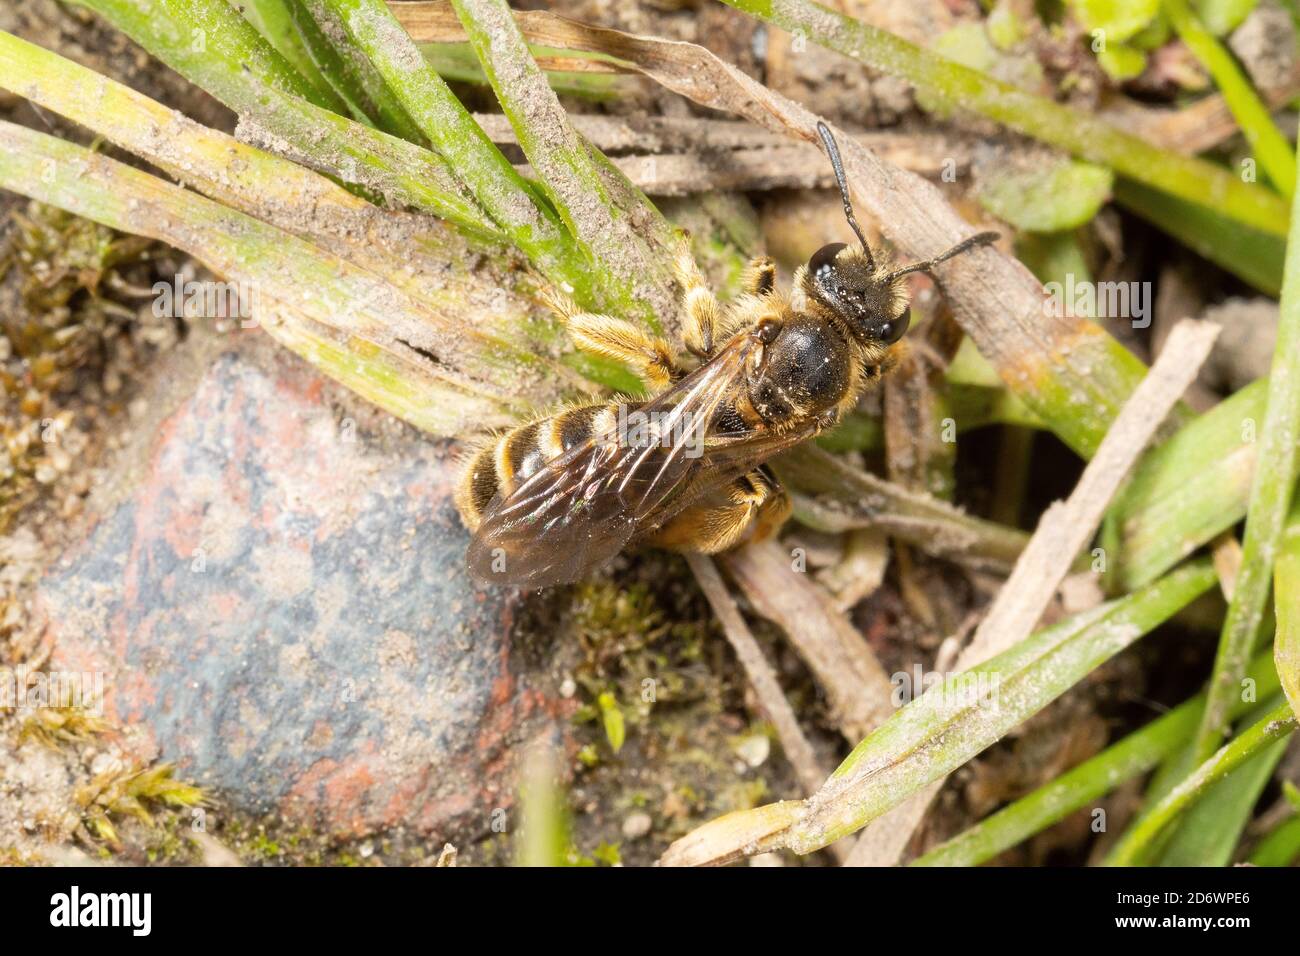 Gemeine Furche Biene im Rasen - ein kleines und leicht übersehenes, aber sehr nützliches Garteninsekt, Kent, Großbritannien. Stockfoto